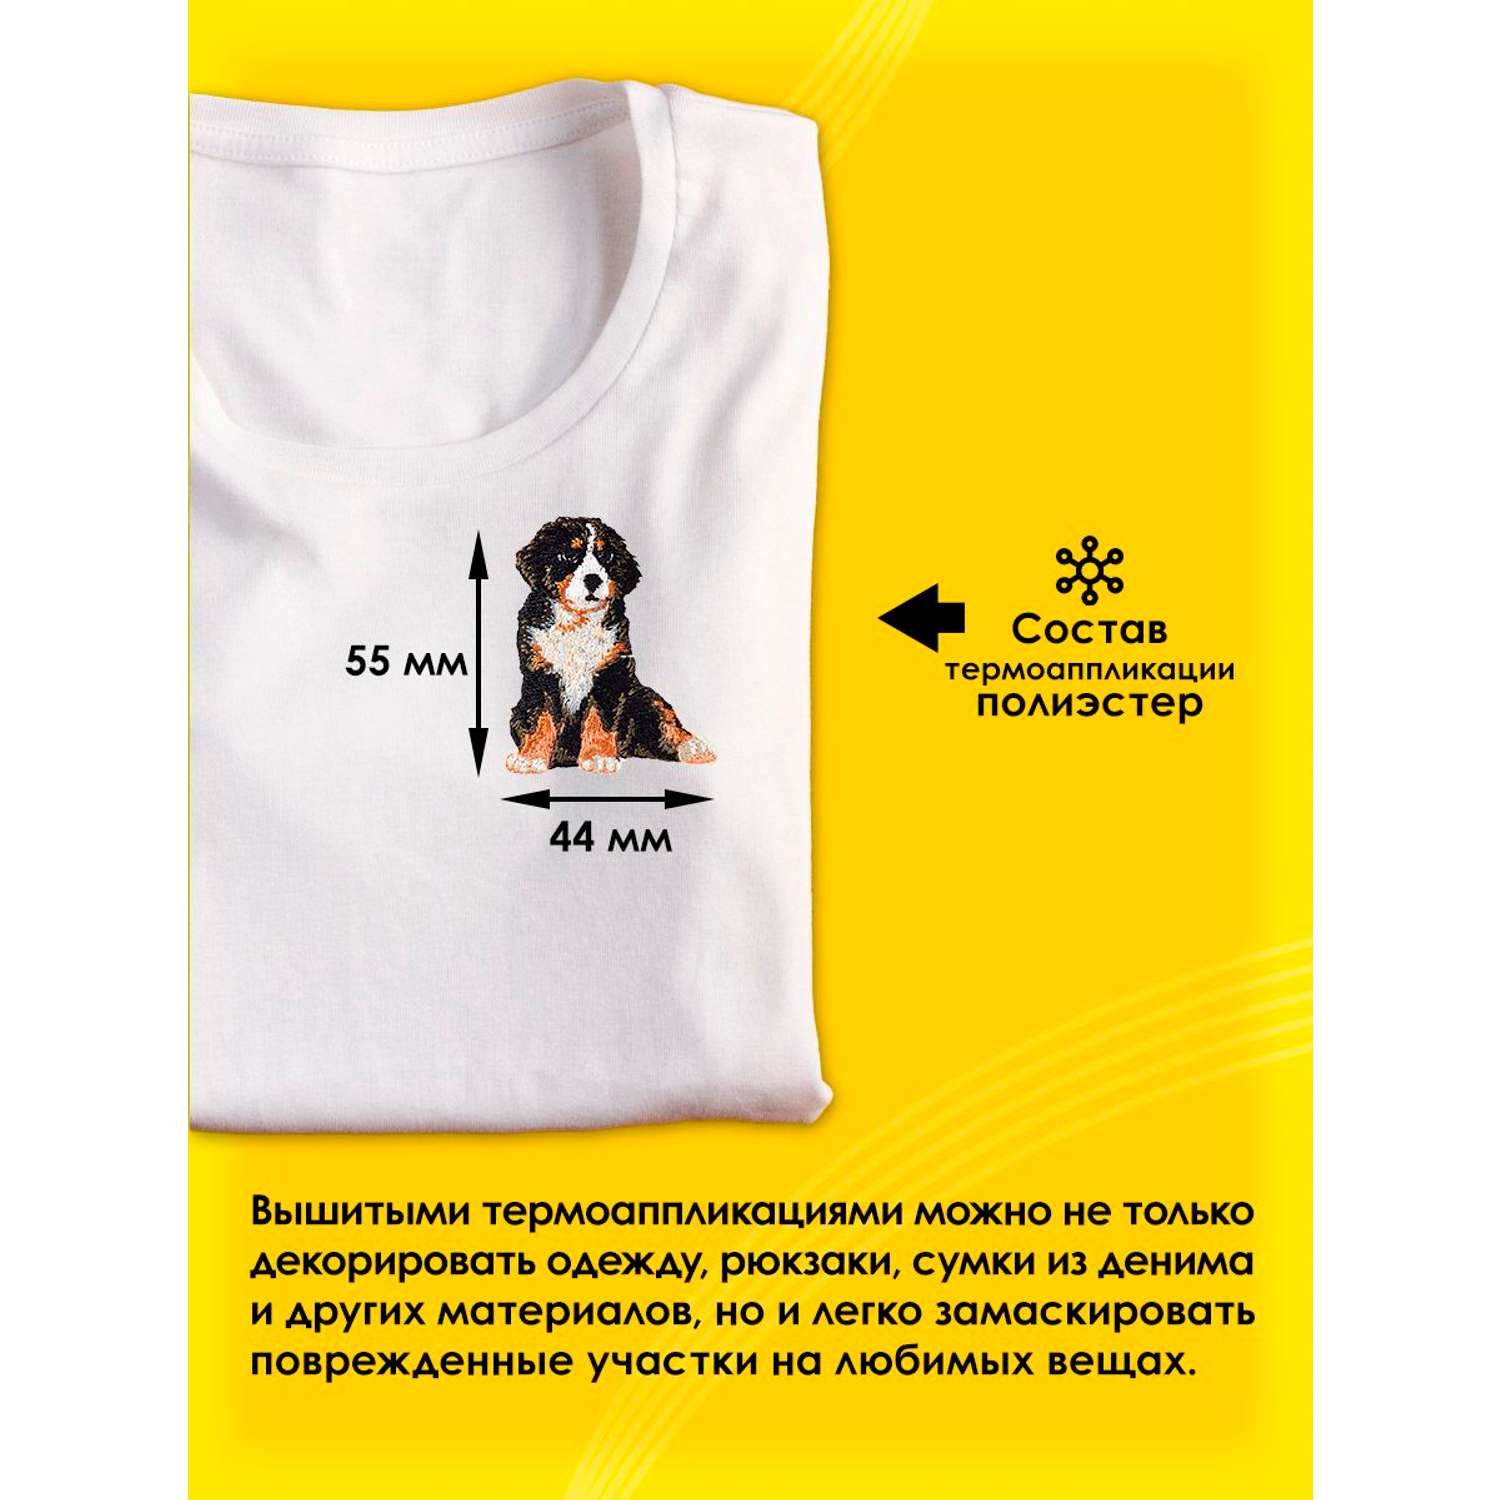 Термоаппликация Prym нашивка Альпийская собака 5.5х4.4 см для ремонта и украшения одежды 925578 - фото 2